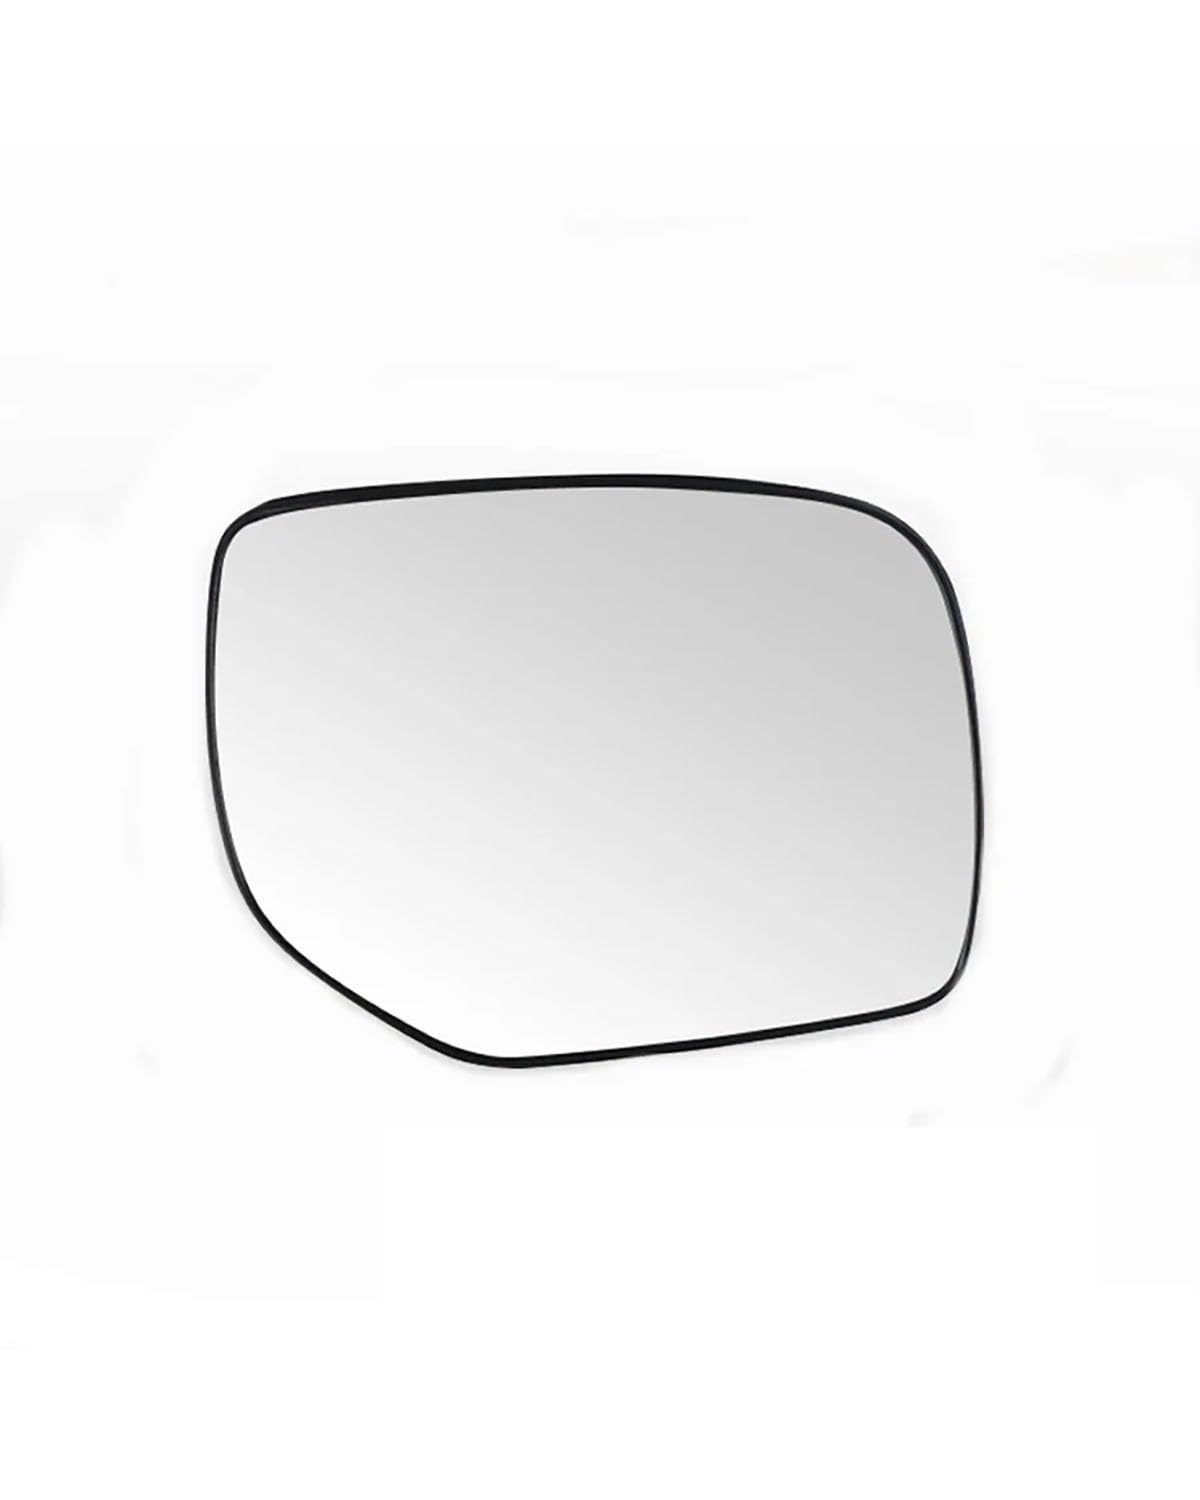 Außenspiegel Glas Für Subaru Für Forester 2012-2018 Autozubehör Seitenreflektierende Linse Rückspiegelglaslinsen Rückspiegelglas(1PCS right side) von MXDDWLKJ